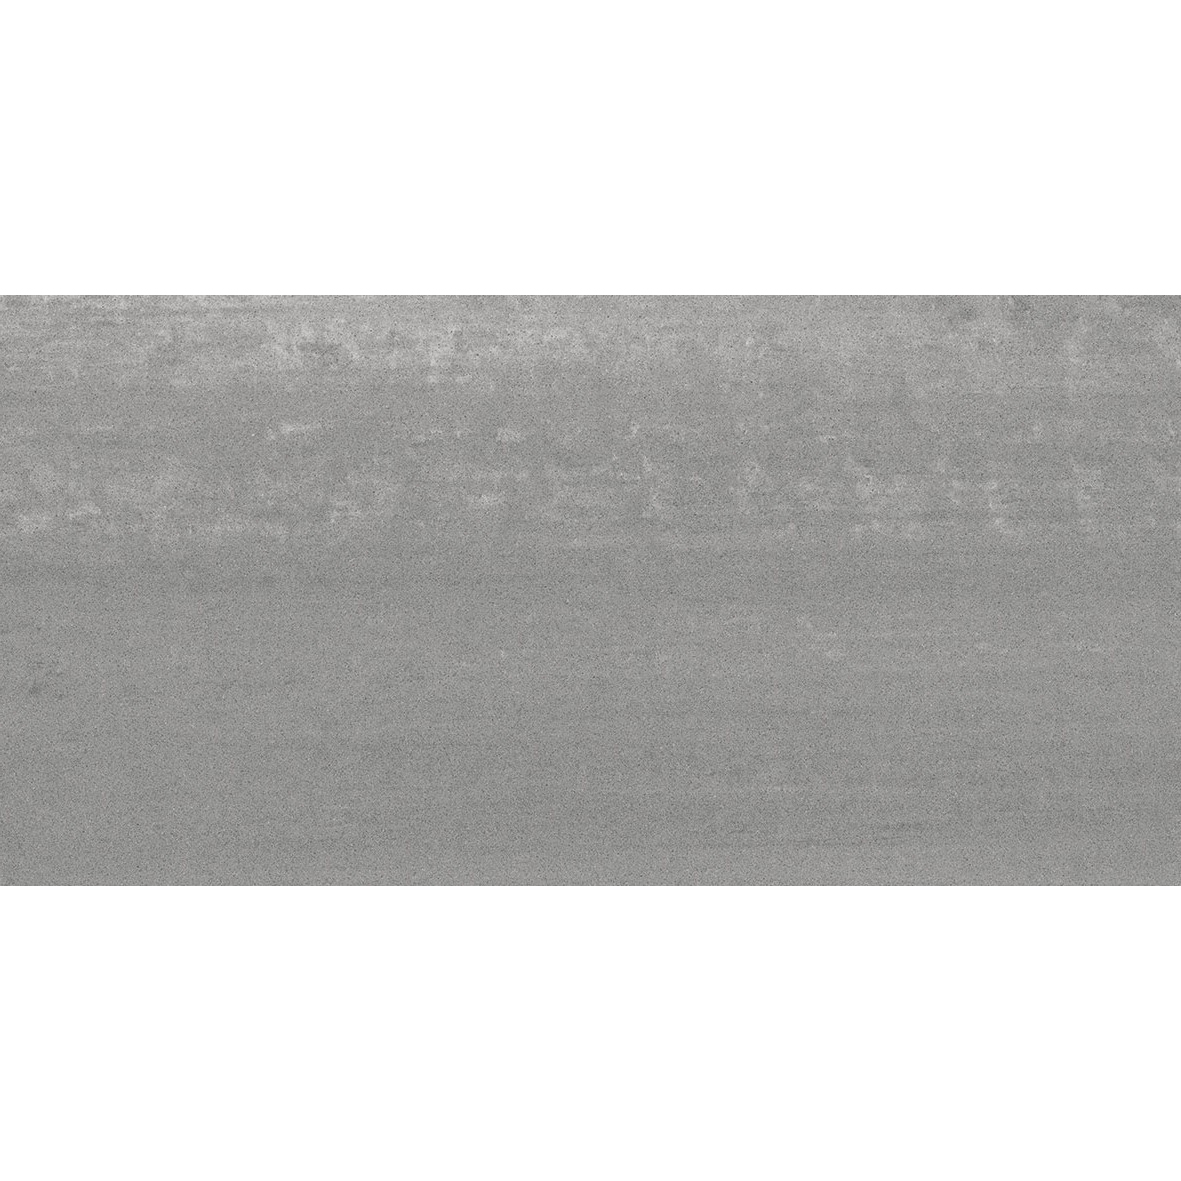 Плитка Kerama marazzi Про Дабл серый темный обрезной DD201000R 30х60 см плитка kerama marazzi про дабл серый обрезной dd201100r 30х60 см